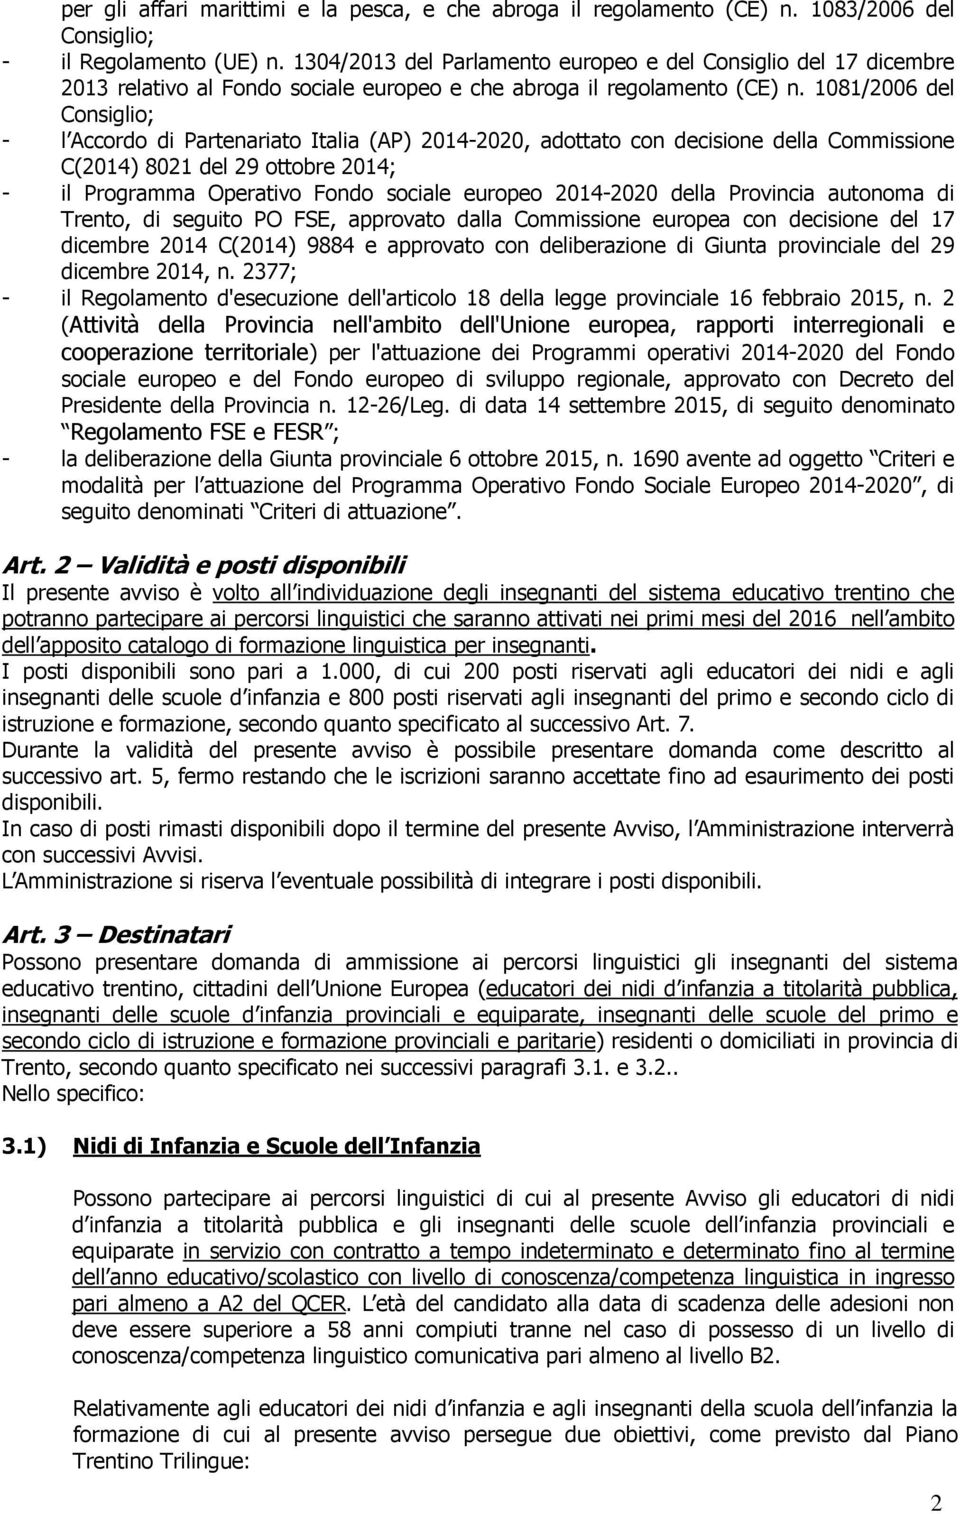 1081/2006 del Consiglio; - l Accordo di Partenariato Italia (AP) 2014-2020, adottato con decisione della Commissione C(2014) 8021 del 29 ottobre 2014; - il Programma Operativo Fondo sociale europeo